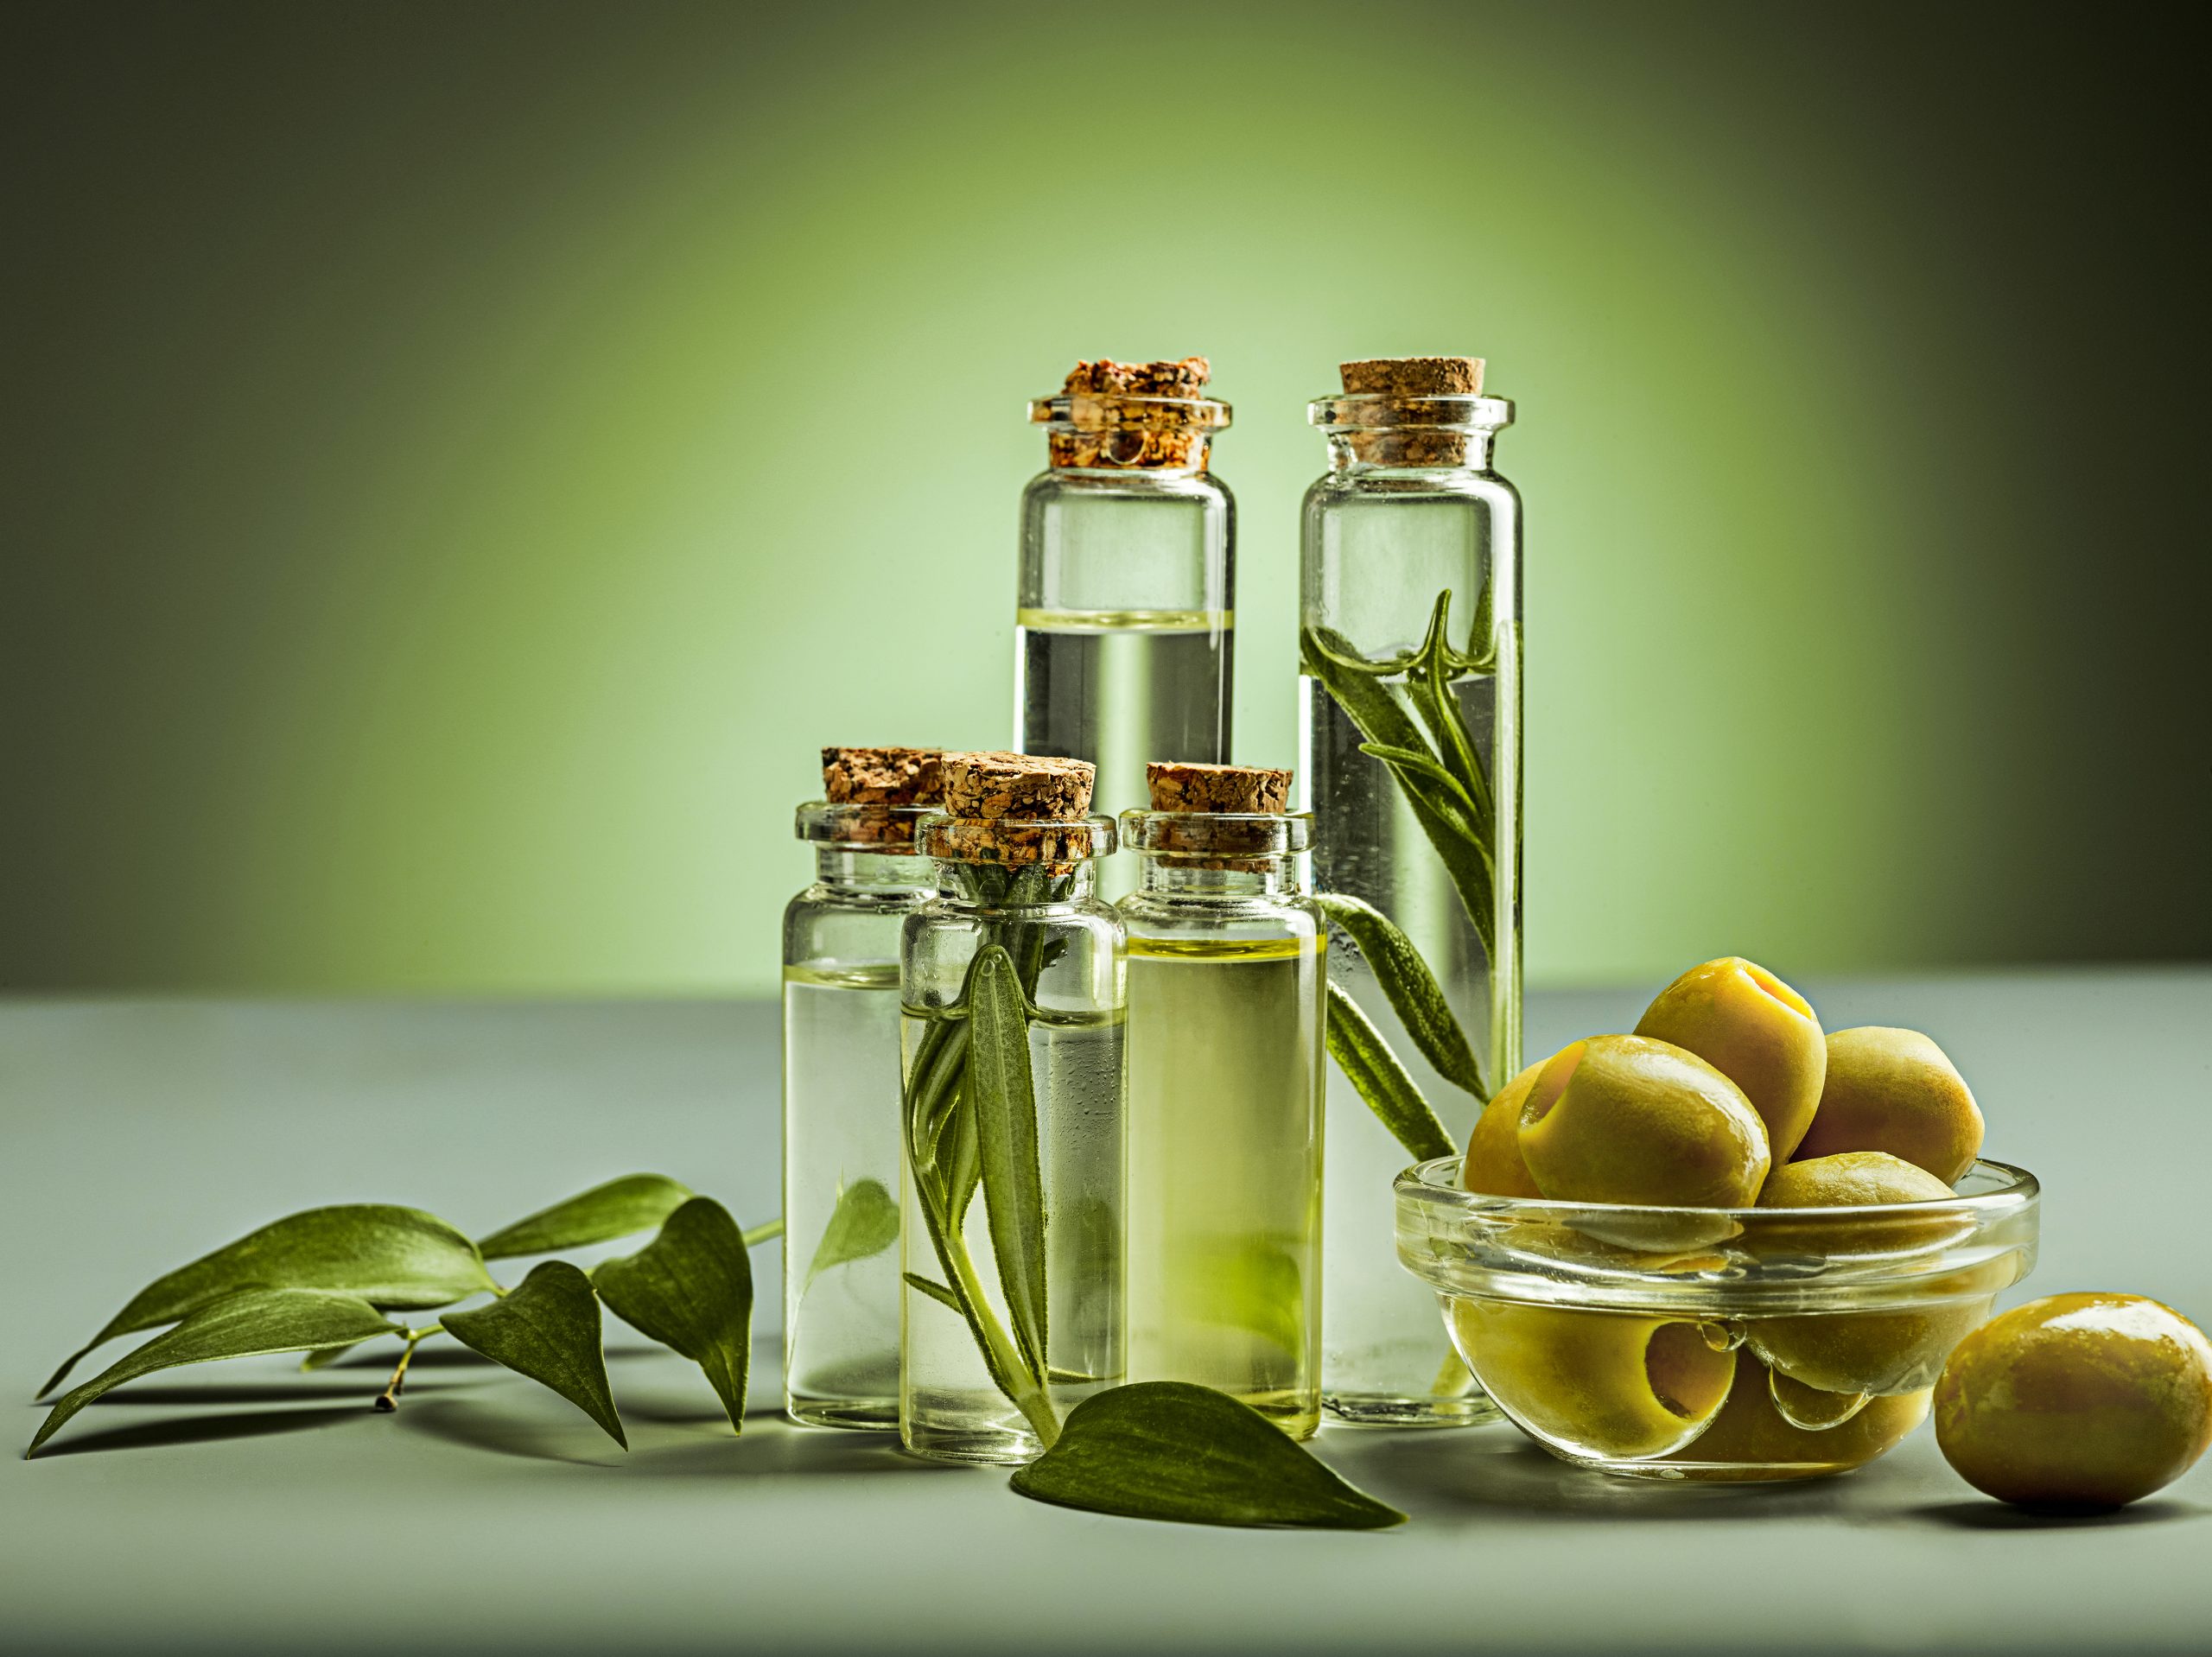 Best olive oil to taste in Spain